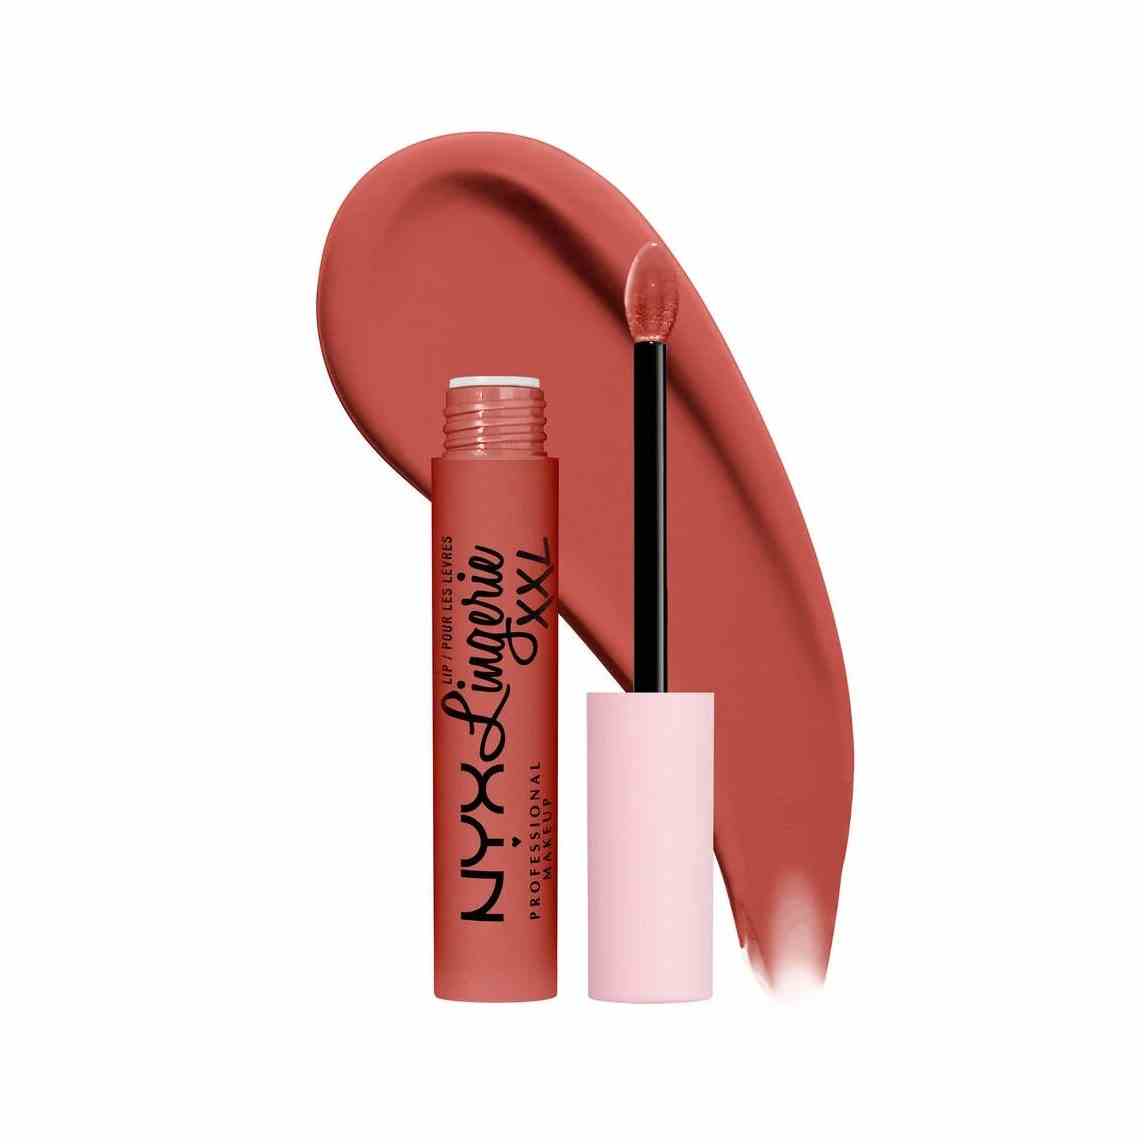 NYX Professional Makeup Lip Lingerie XXL Matte Liquid Lipstick Tube mit pinkfarbenem flüssigem Lippenstift in Terrakotta mit flachem Applikator und großem Muster auf weißem Hintergrund